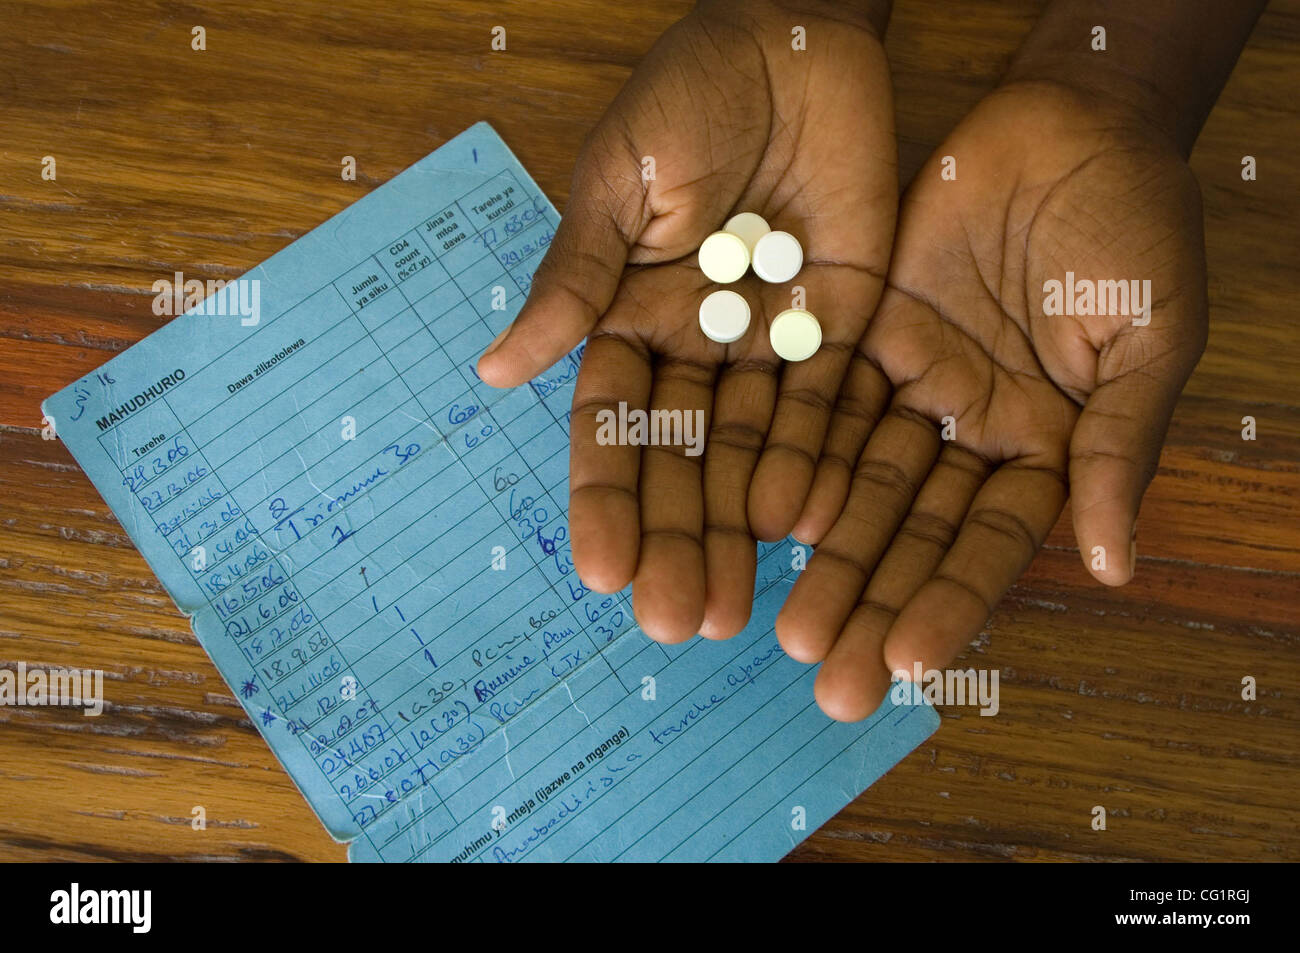 Agosto 27, 2007, Mwanza, Tanzania - un paziente su anti-retrovirali farmaci per l'HIV visualizza alcune delle pillole che riceve ogni mese attraverso un ospedale programma sostenuto da un aiuto internazionale agenzia. (Credit: David Snyder/ZUMA Press) Foto Stock